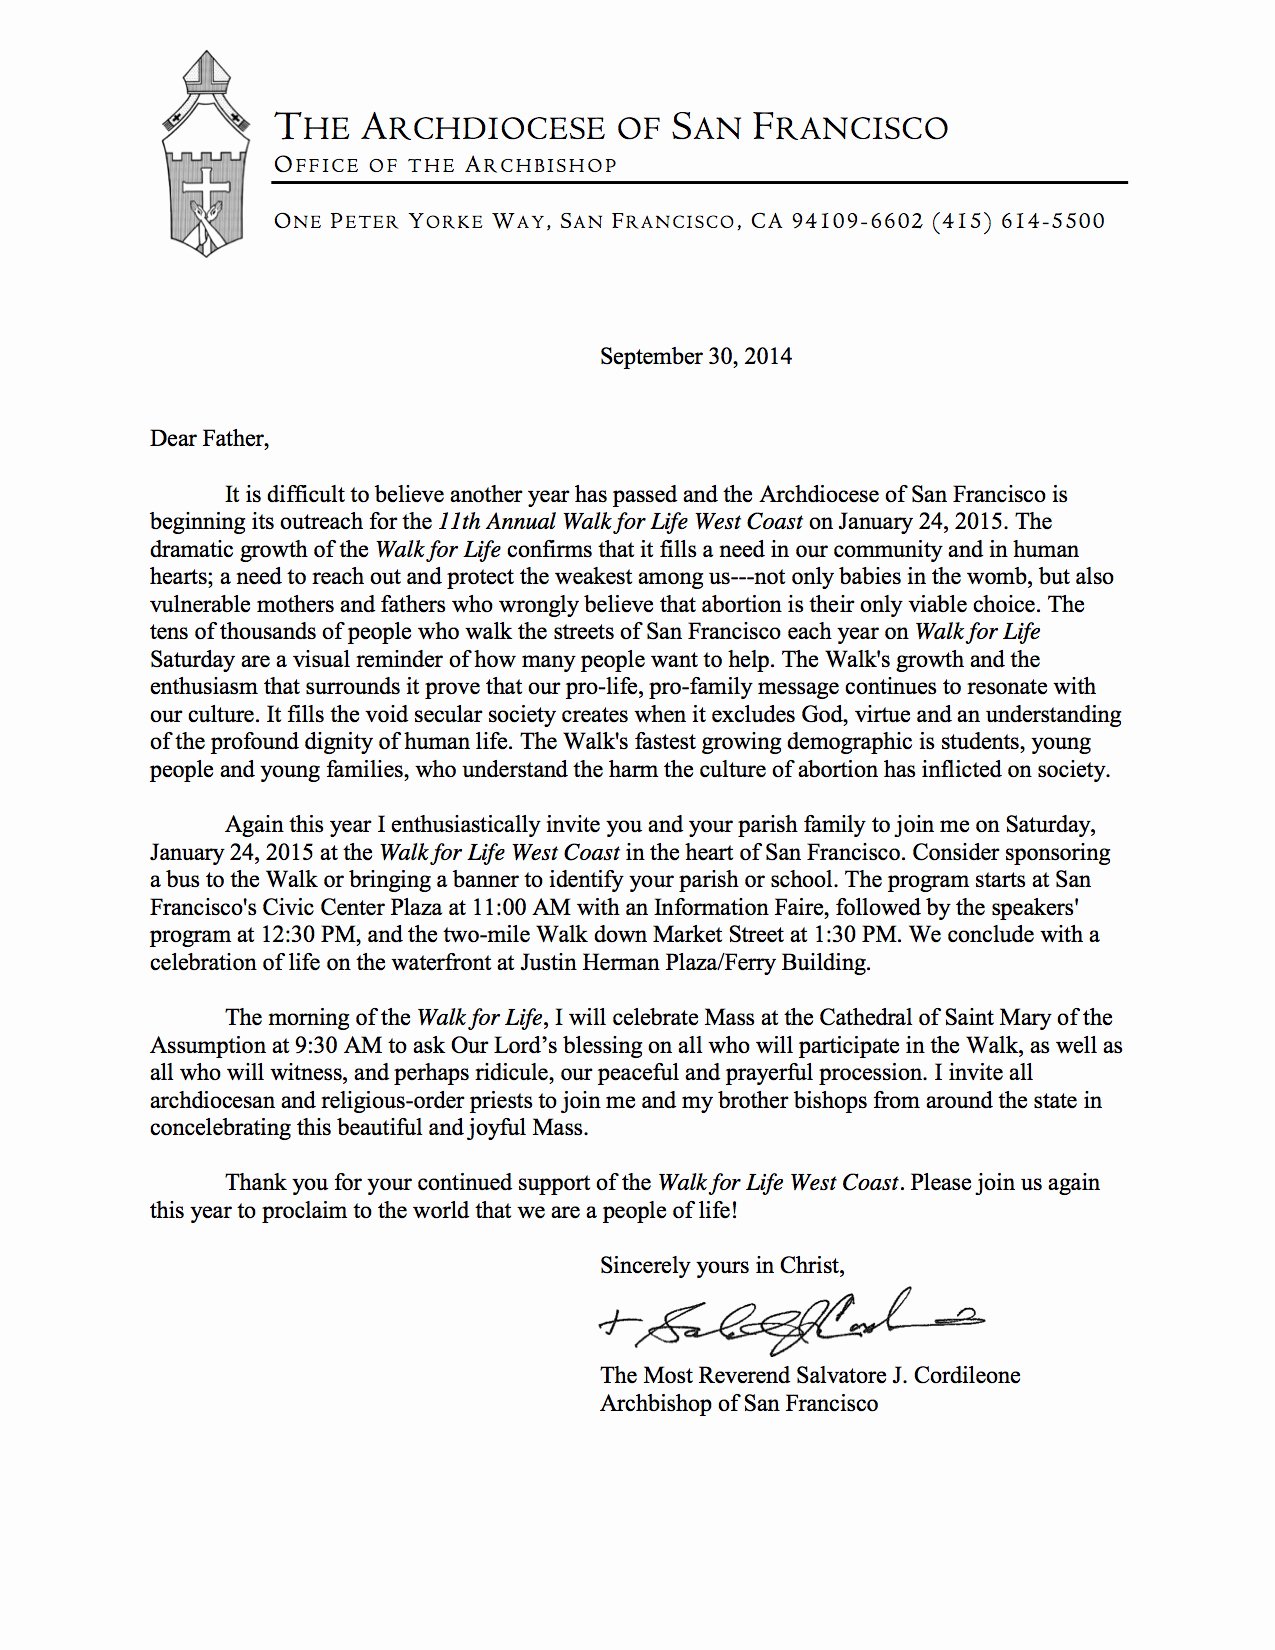 Sample Church Invitation Letter Unique An Invitation Letter From Archbishop Salvatore Cordileone